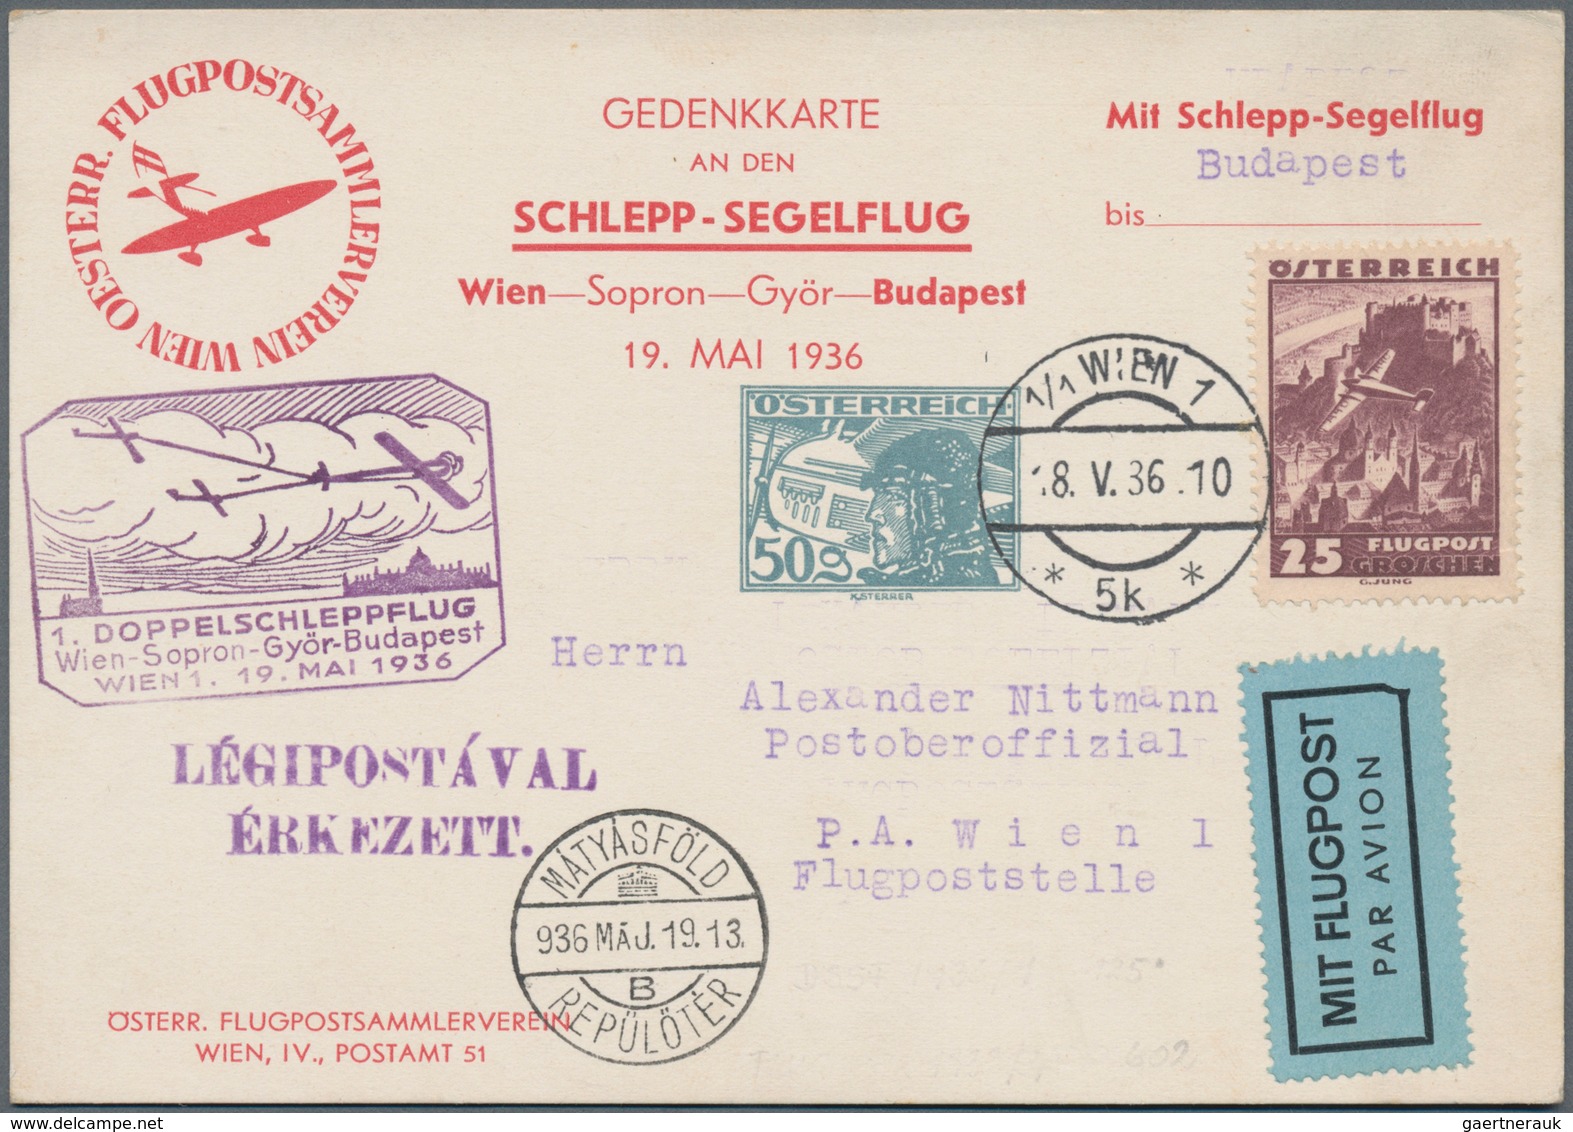 Österreich - Privatganzsachen: 1933/1937, fünf verschiedene Privat-Postkarten alle mit Wertstempel '